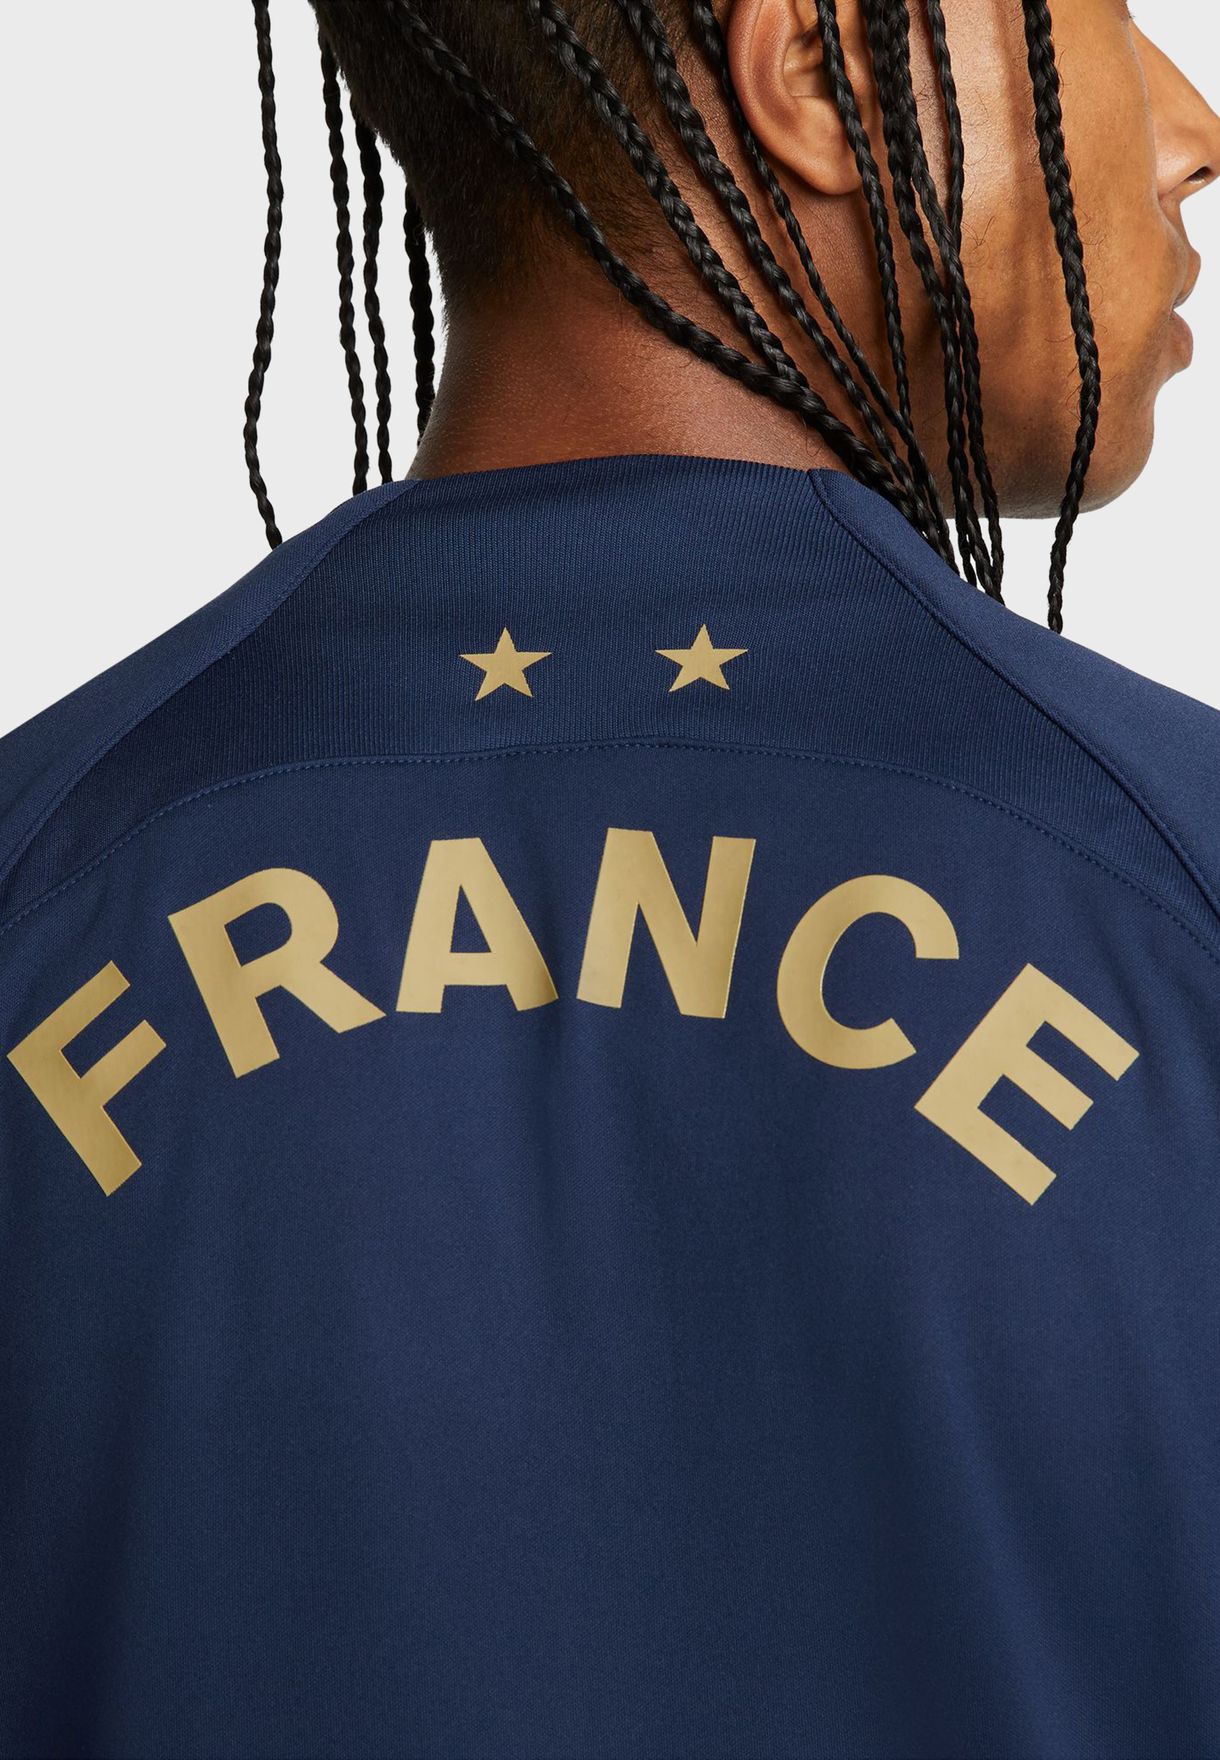 جاكيت بشعار فريق فرنسا لكرة القدم